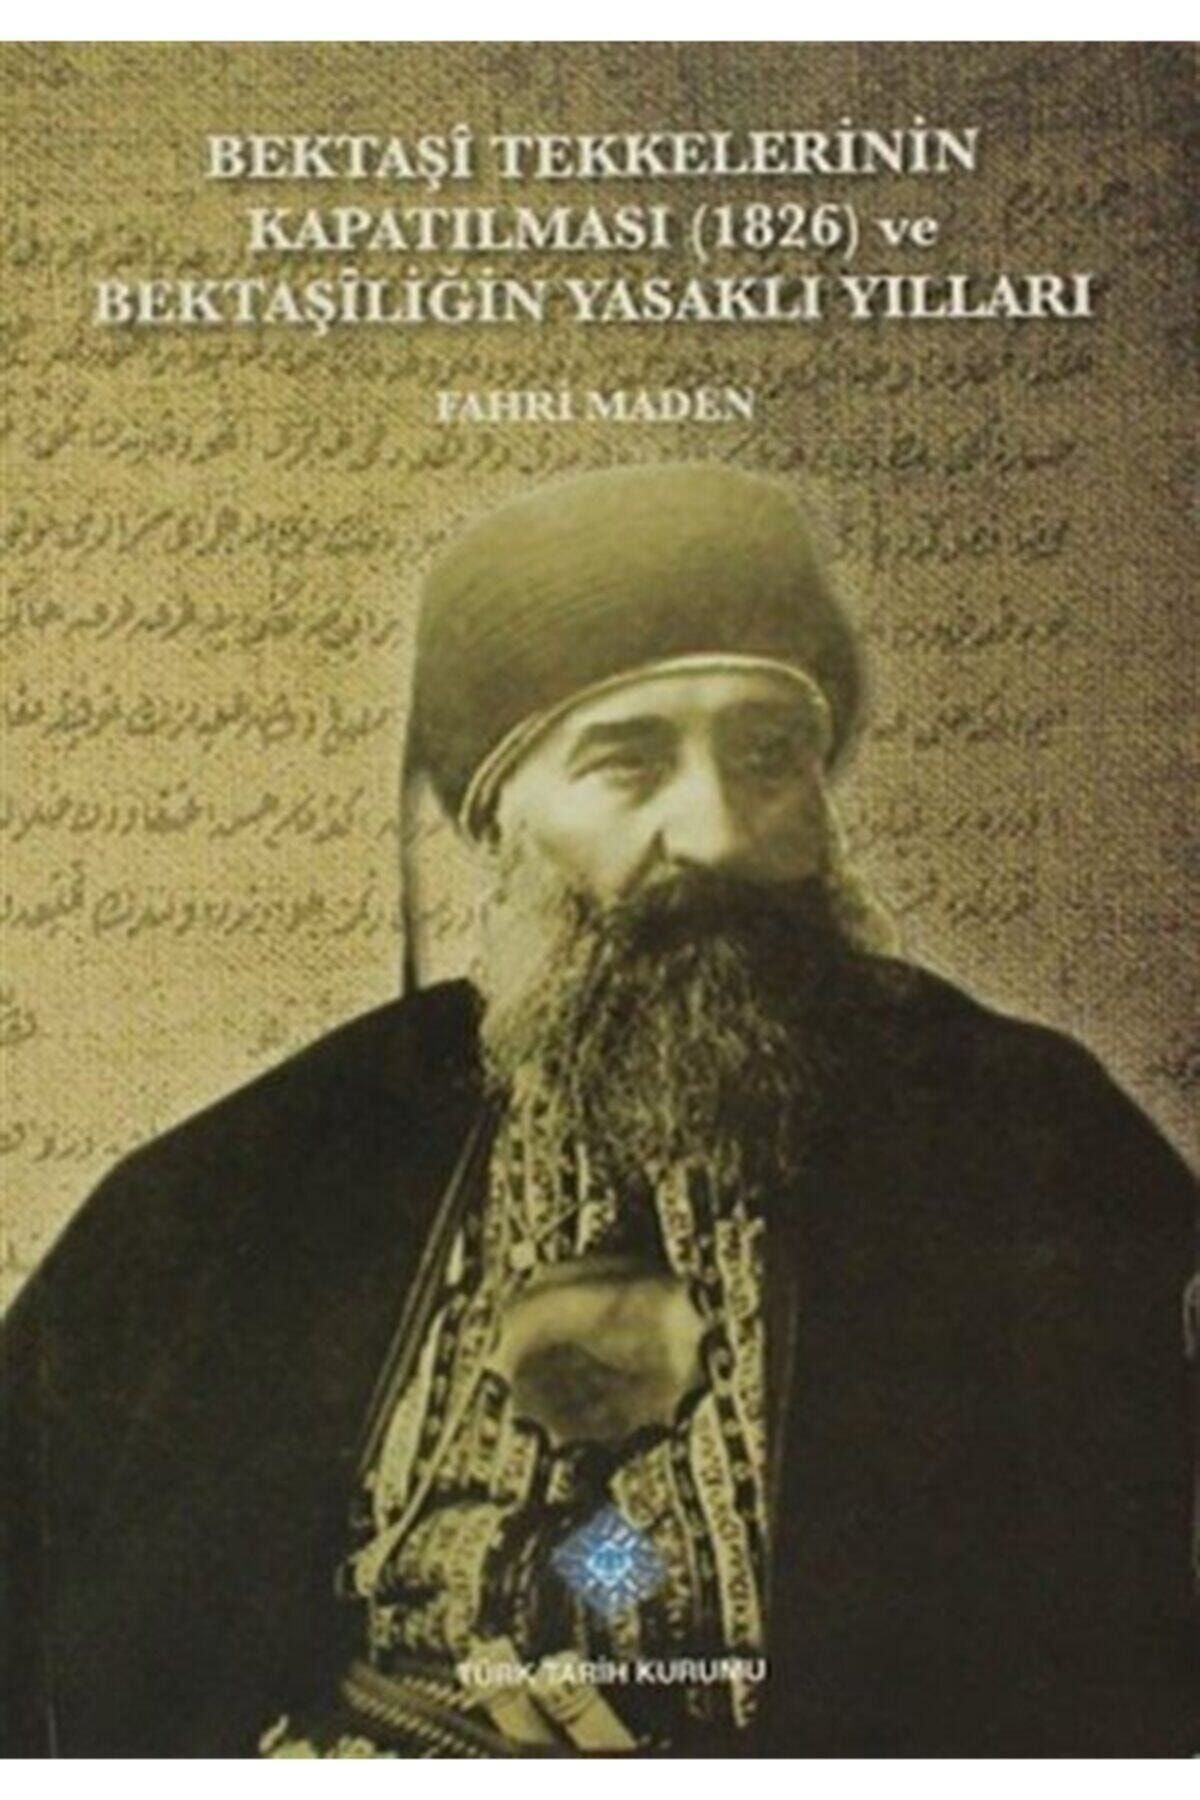 Türk Tarih Kurumu Yayınları Bektaşi Tekkelerinin Kapatılması (1826) Ve Bektaşiliğin Yasaklı Yılları